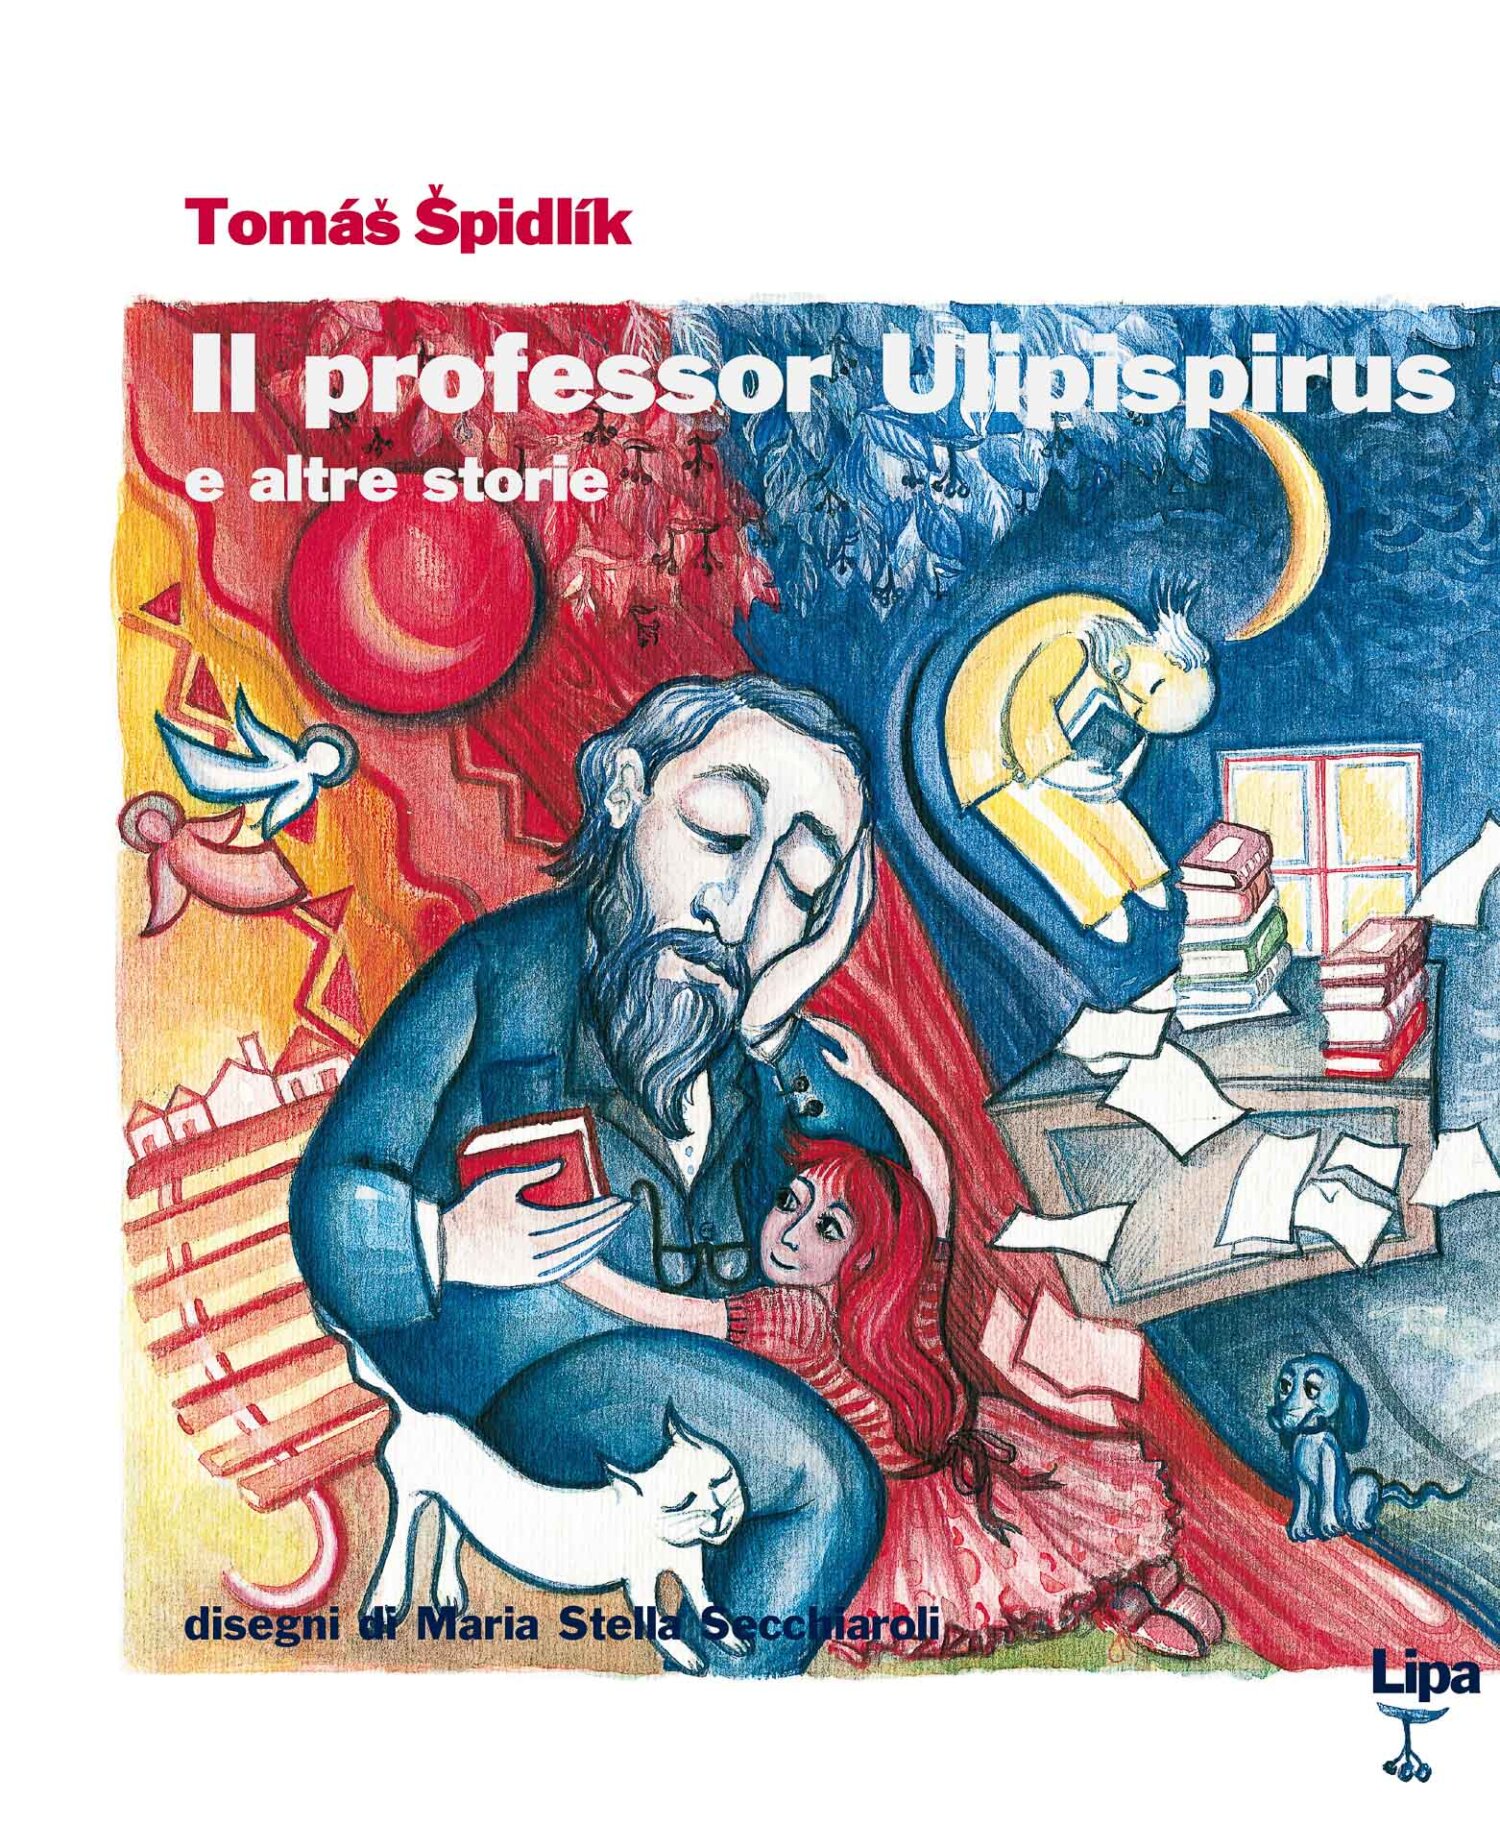 Copertina del libro "Il professor Ulipispirus" di Tomas Spidlik